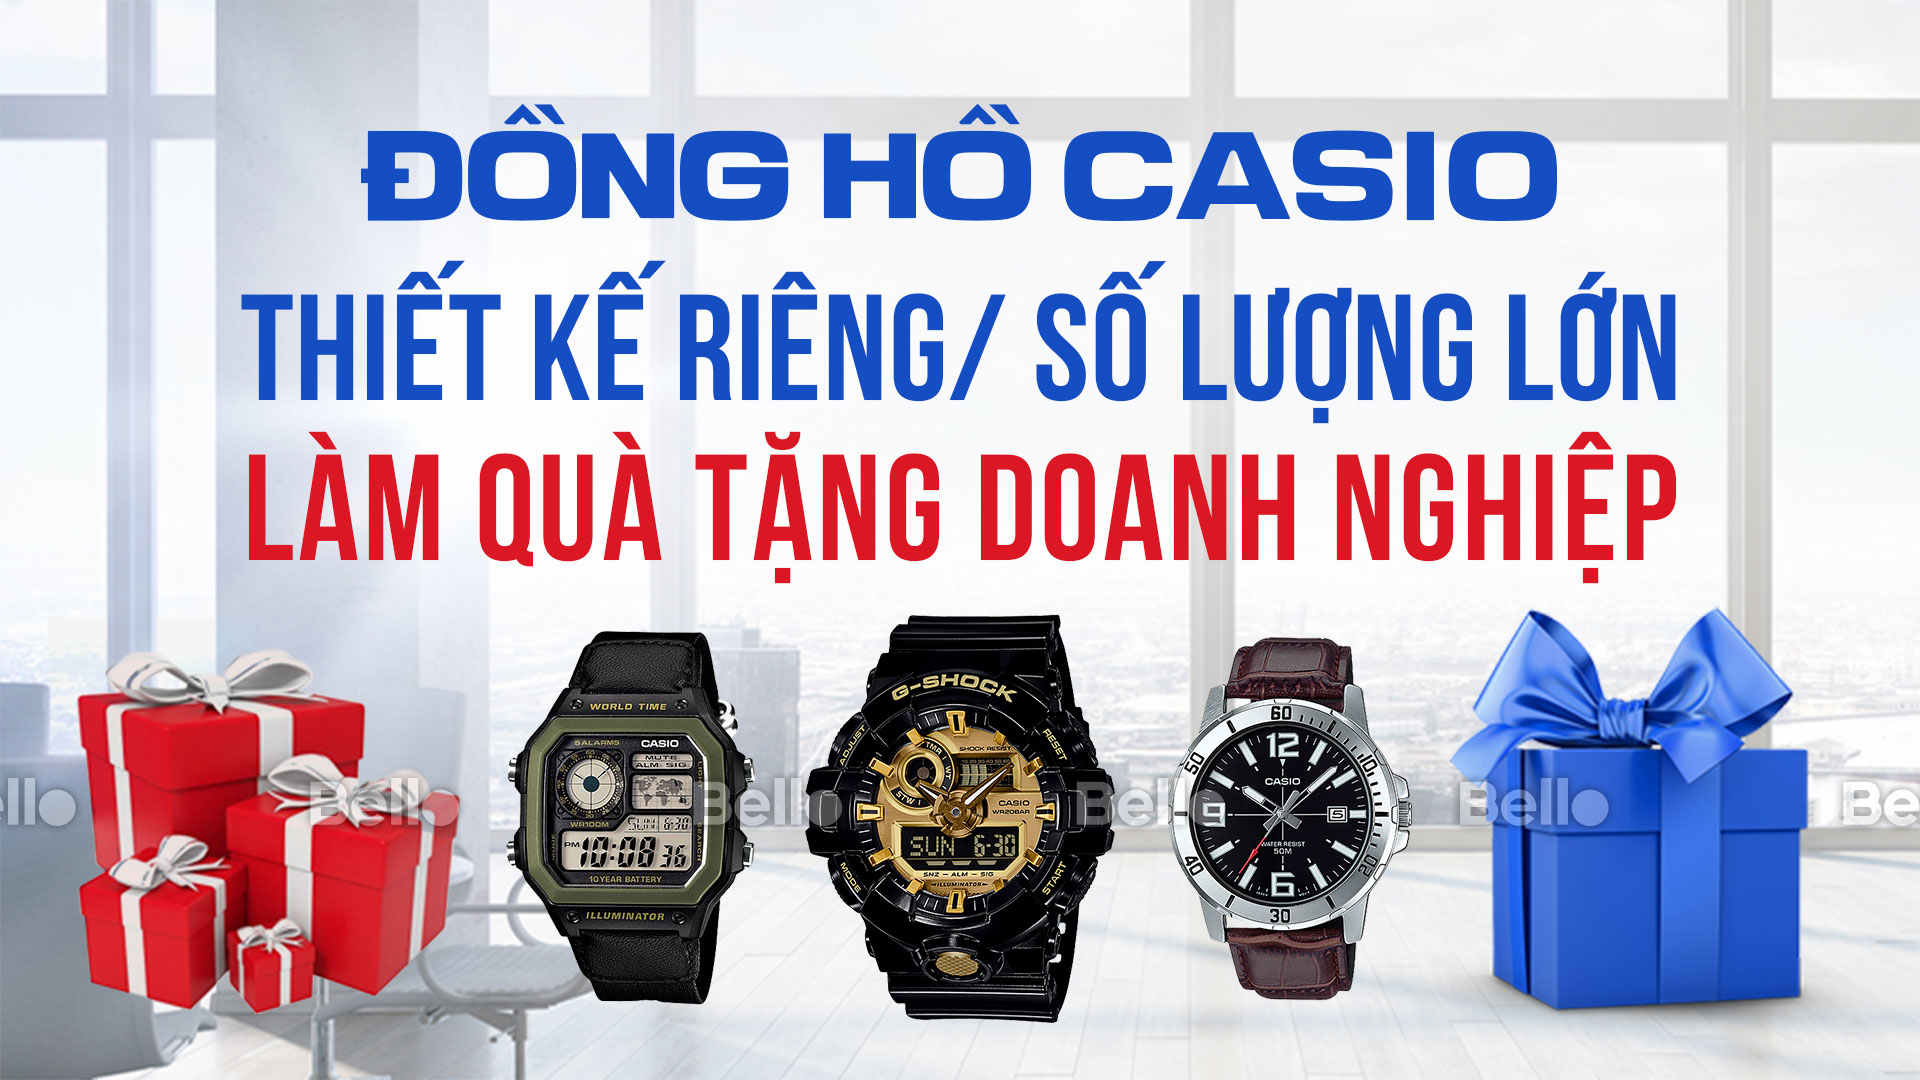 Đồng hồ Casio thiết kế riêng, số lượng lớn làm quà tặng doanh nghiệp